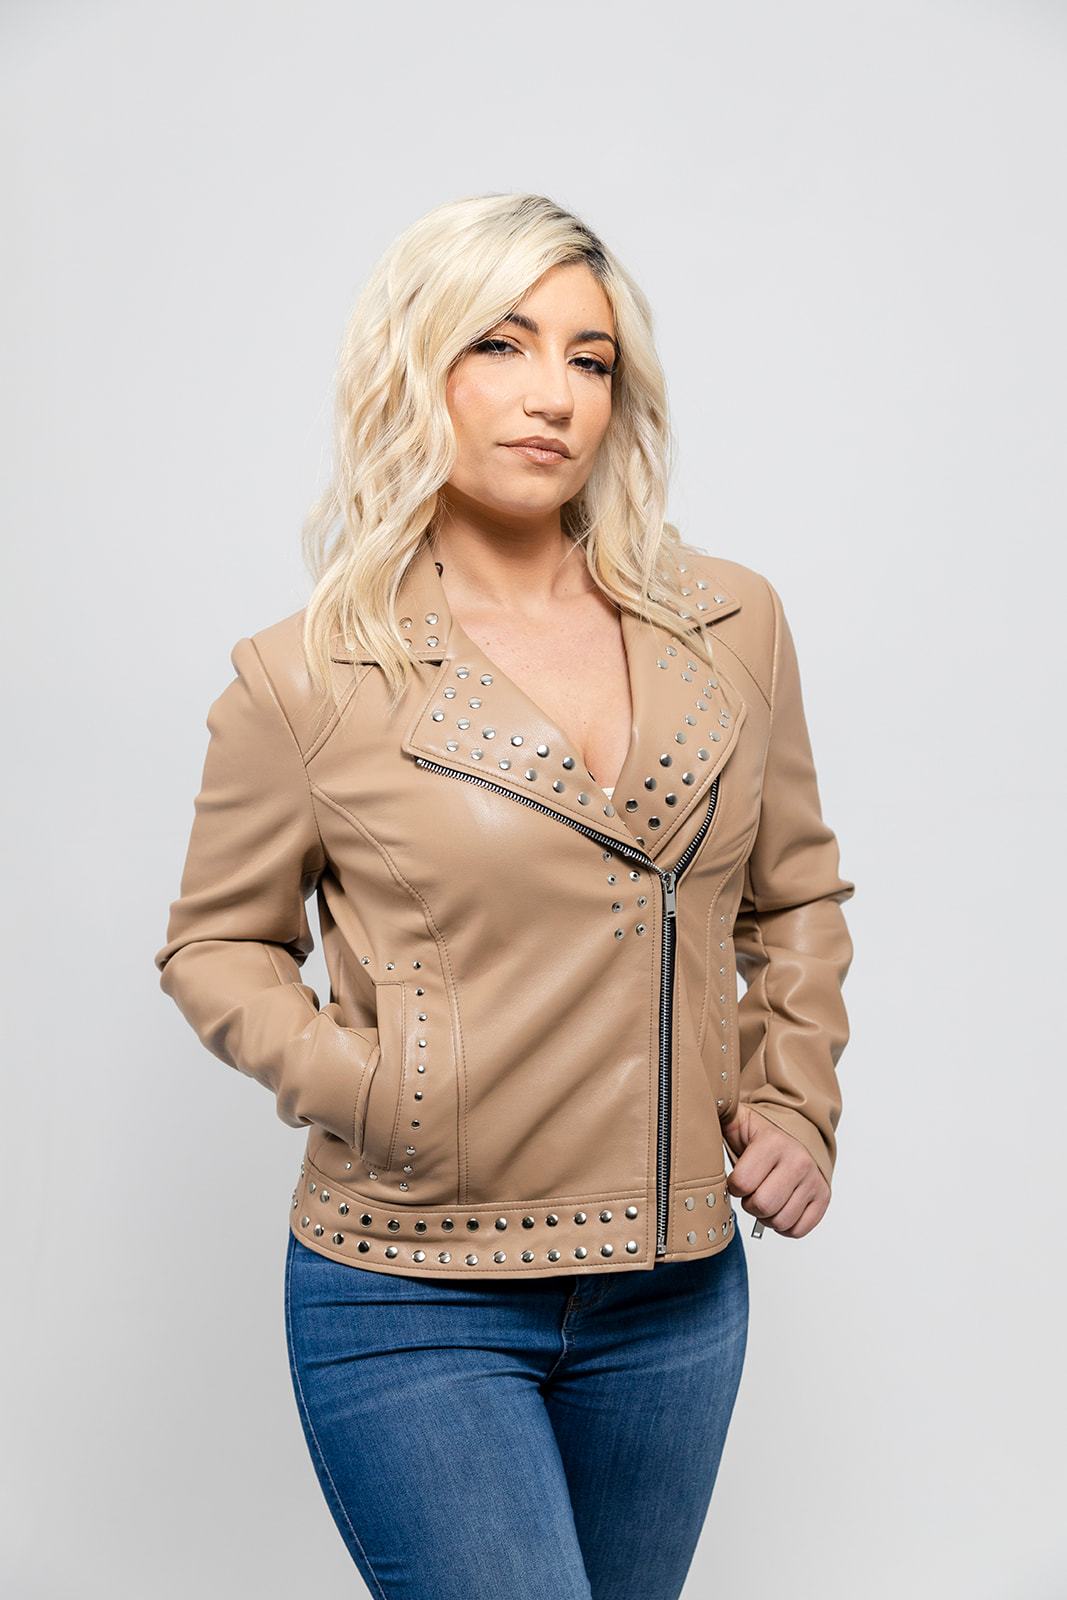 Sandy - Women's Vegan Faux Leather Jacket (Beige) Jacket Best Leather Ny XS Beige 